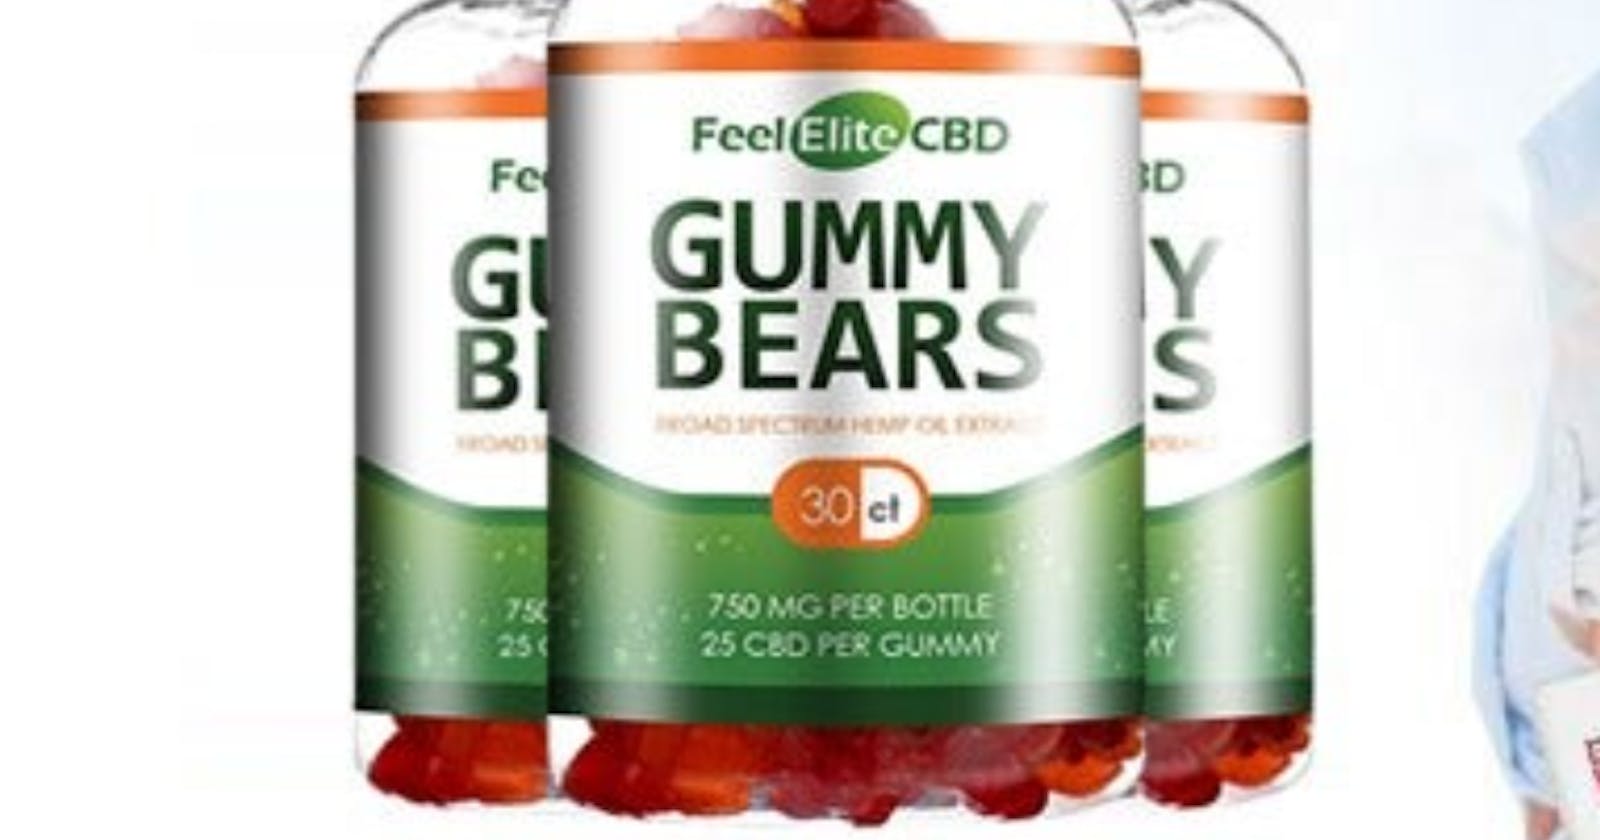 Feel Elite CBD Gummies Reviews Ingredients Amazing Results!